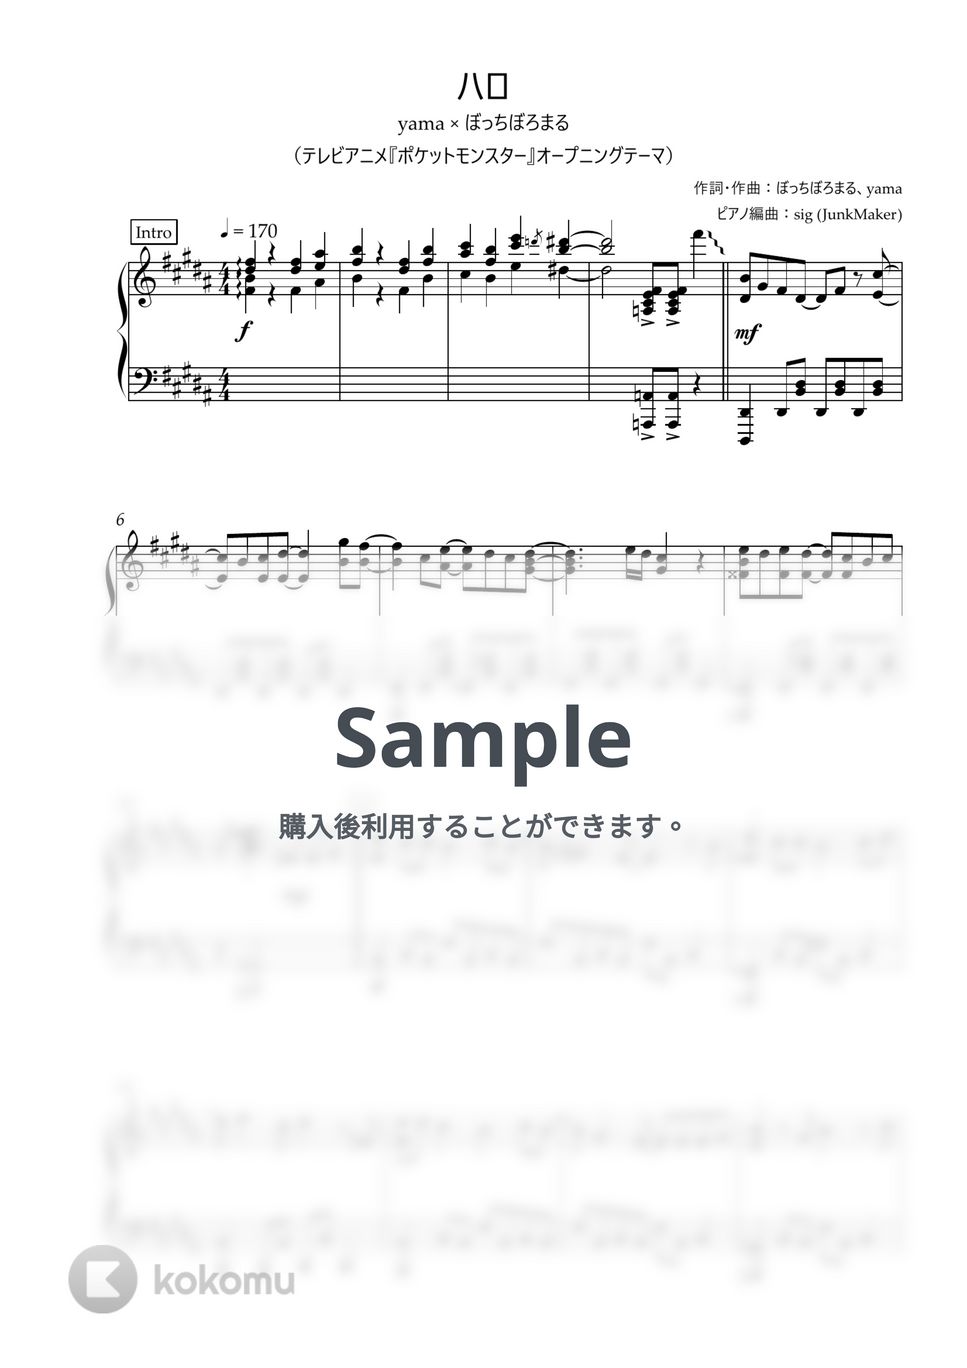 yama、ぼっちぼろまる - ハロ (ピアノソロ/TV Size) by しぐ (JunkMaker)